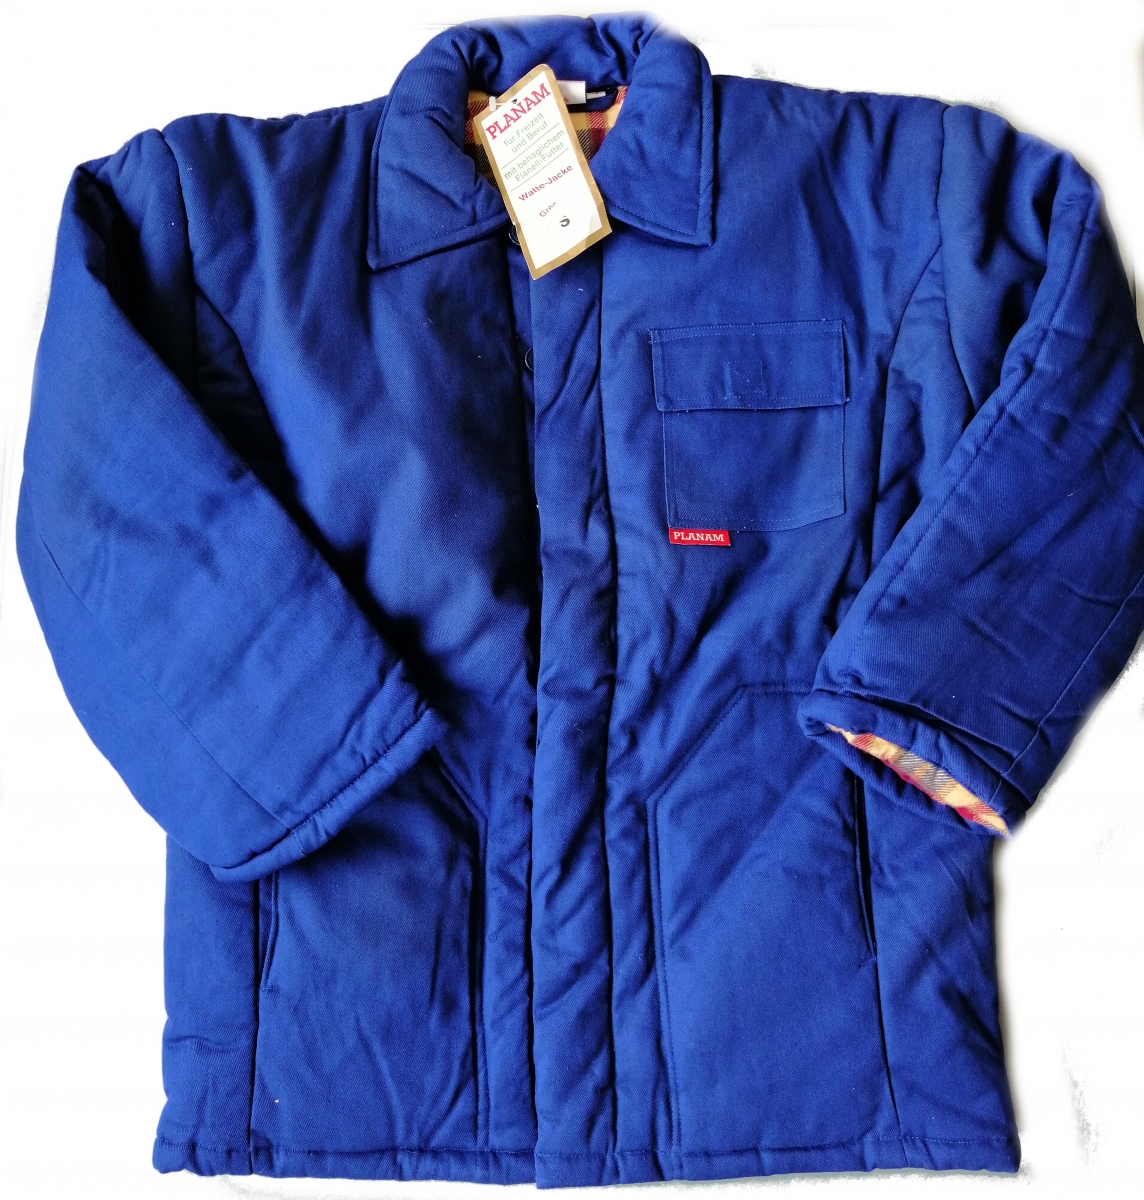 PLANAM Watte Jacke Arbeitsjacke Winterjacke Schutzjacke mit flauschigem Flanellfutter kornblau